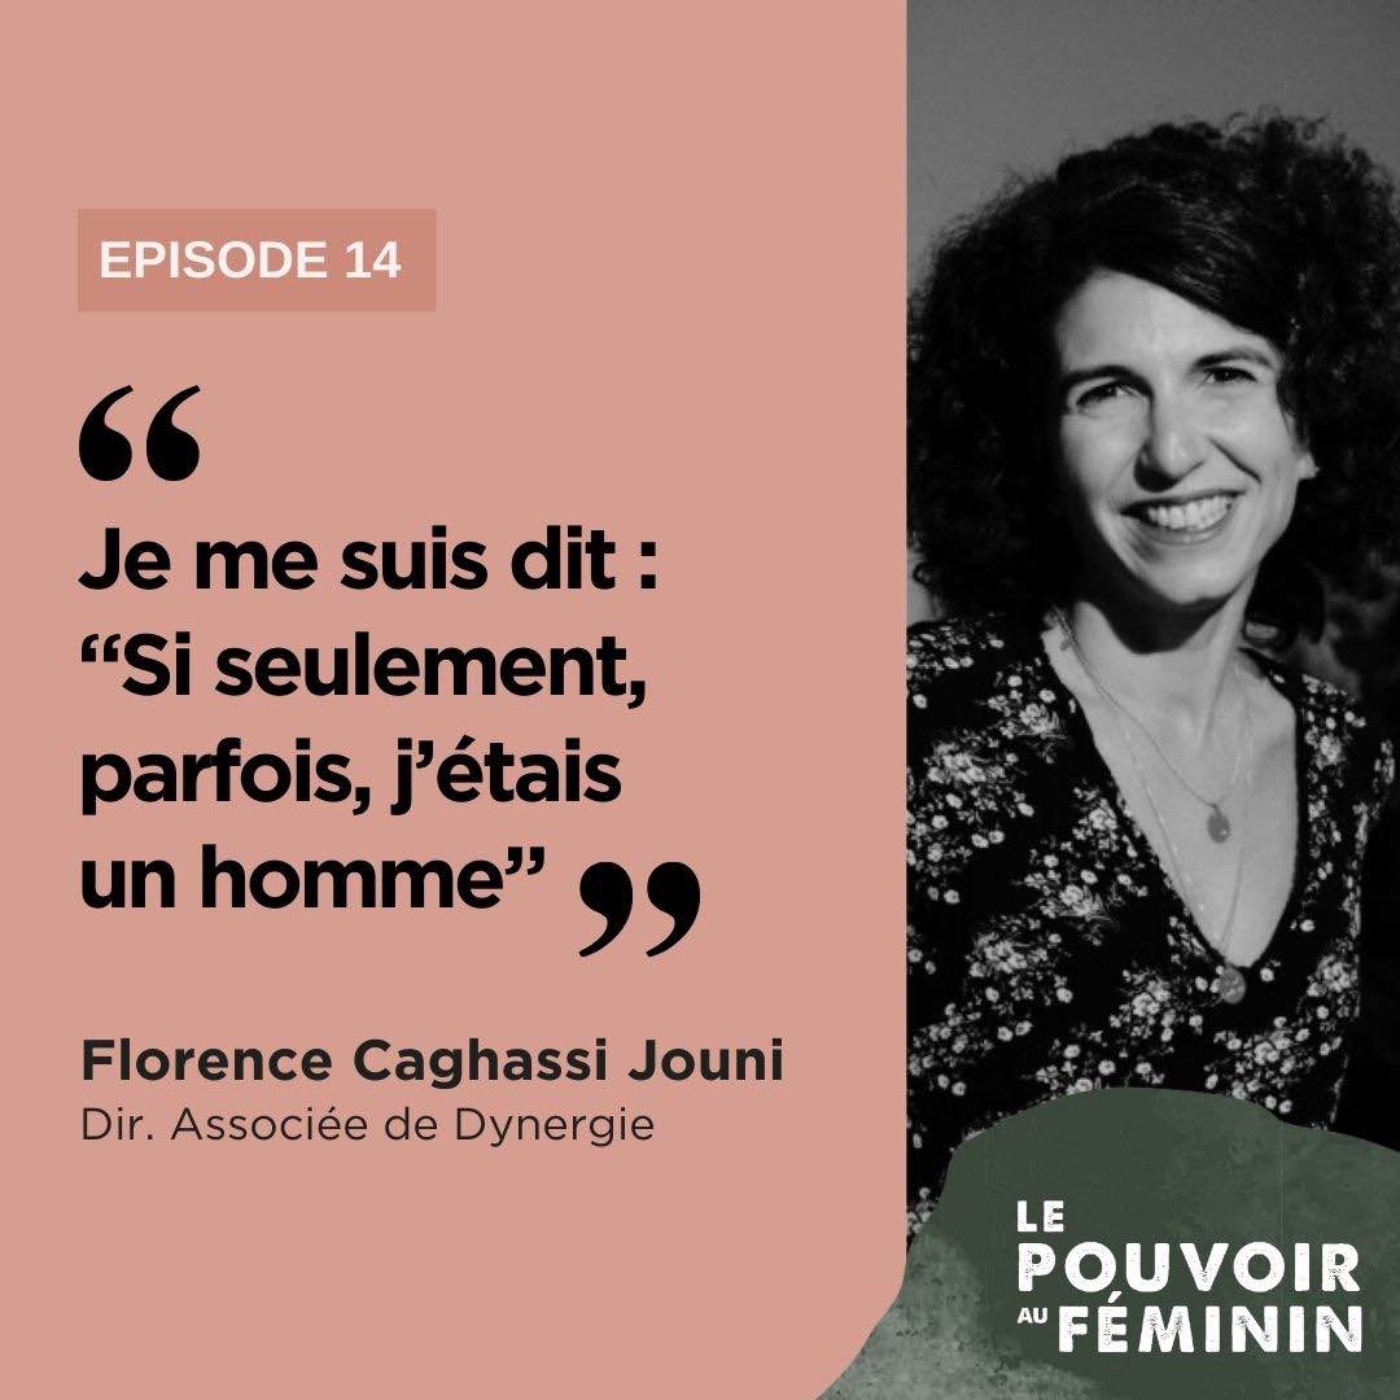 Florence Caghassi Jouni, DG Associée de Dynergie - "Je me suis dit : "Si seulement, parfois, j'étais un homme.""